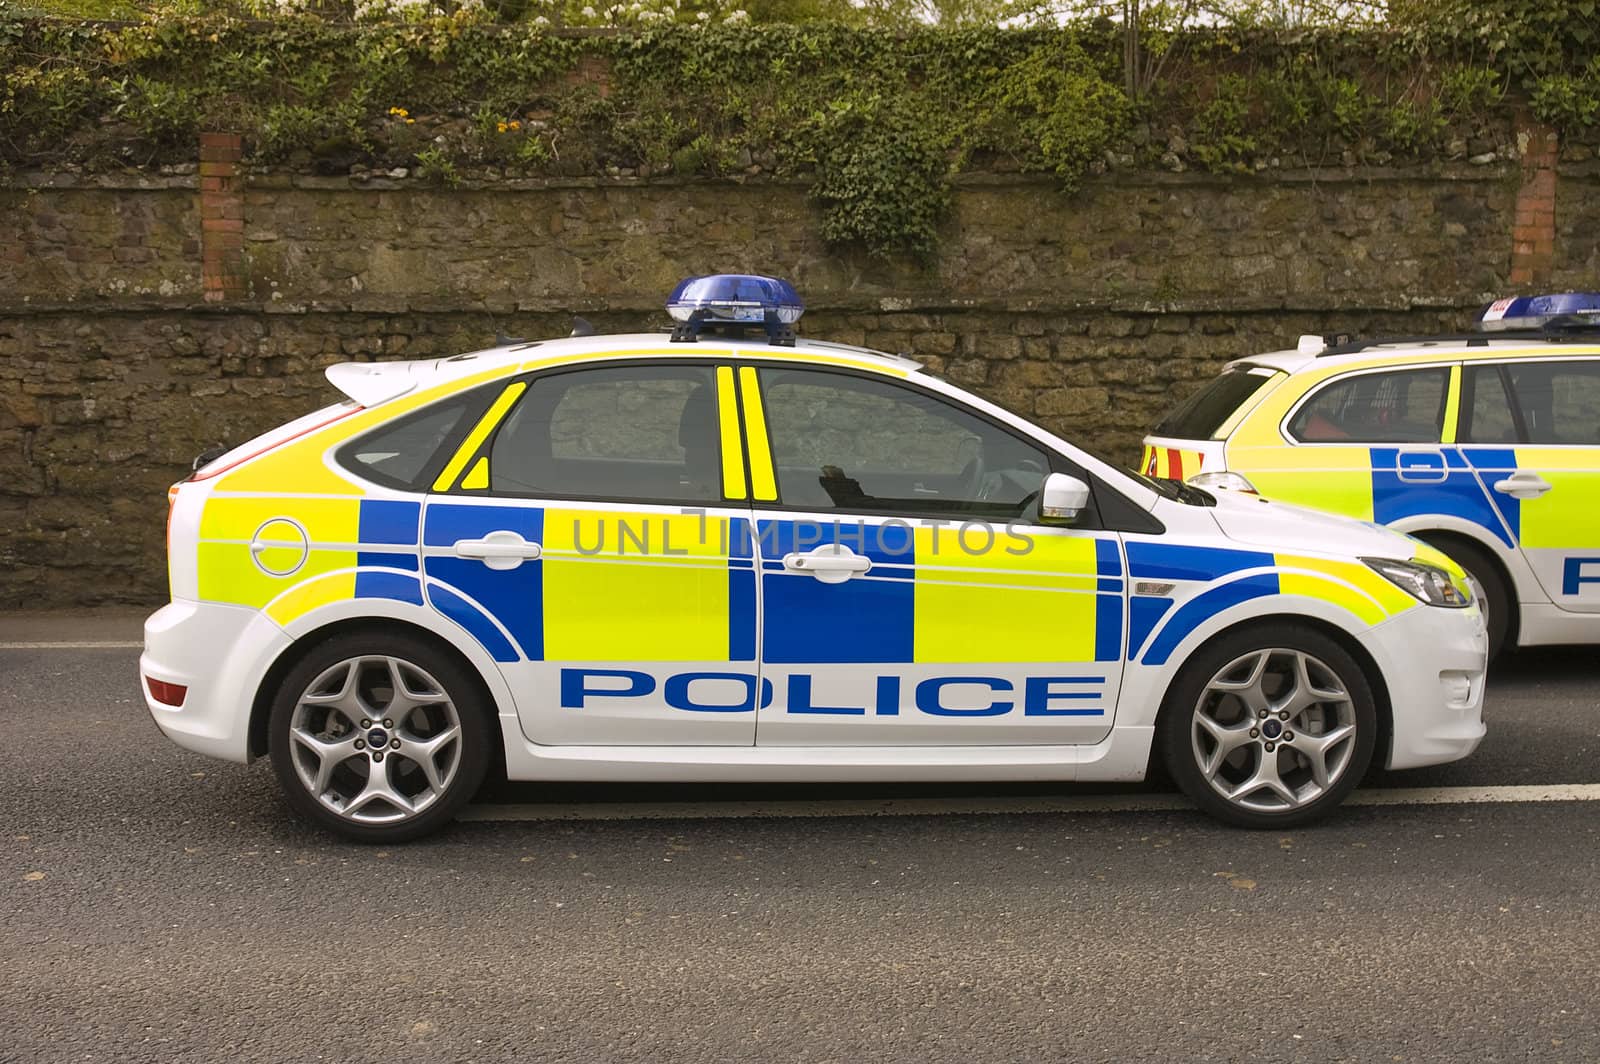 UK police cars by jeffbanke